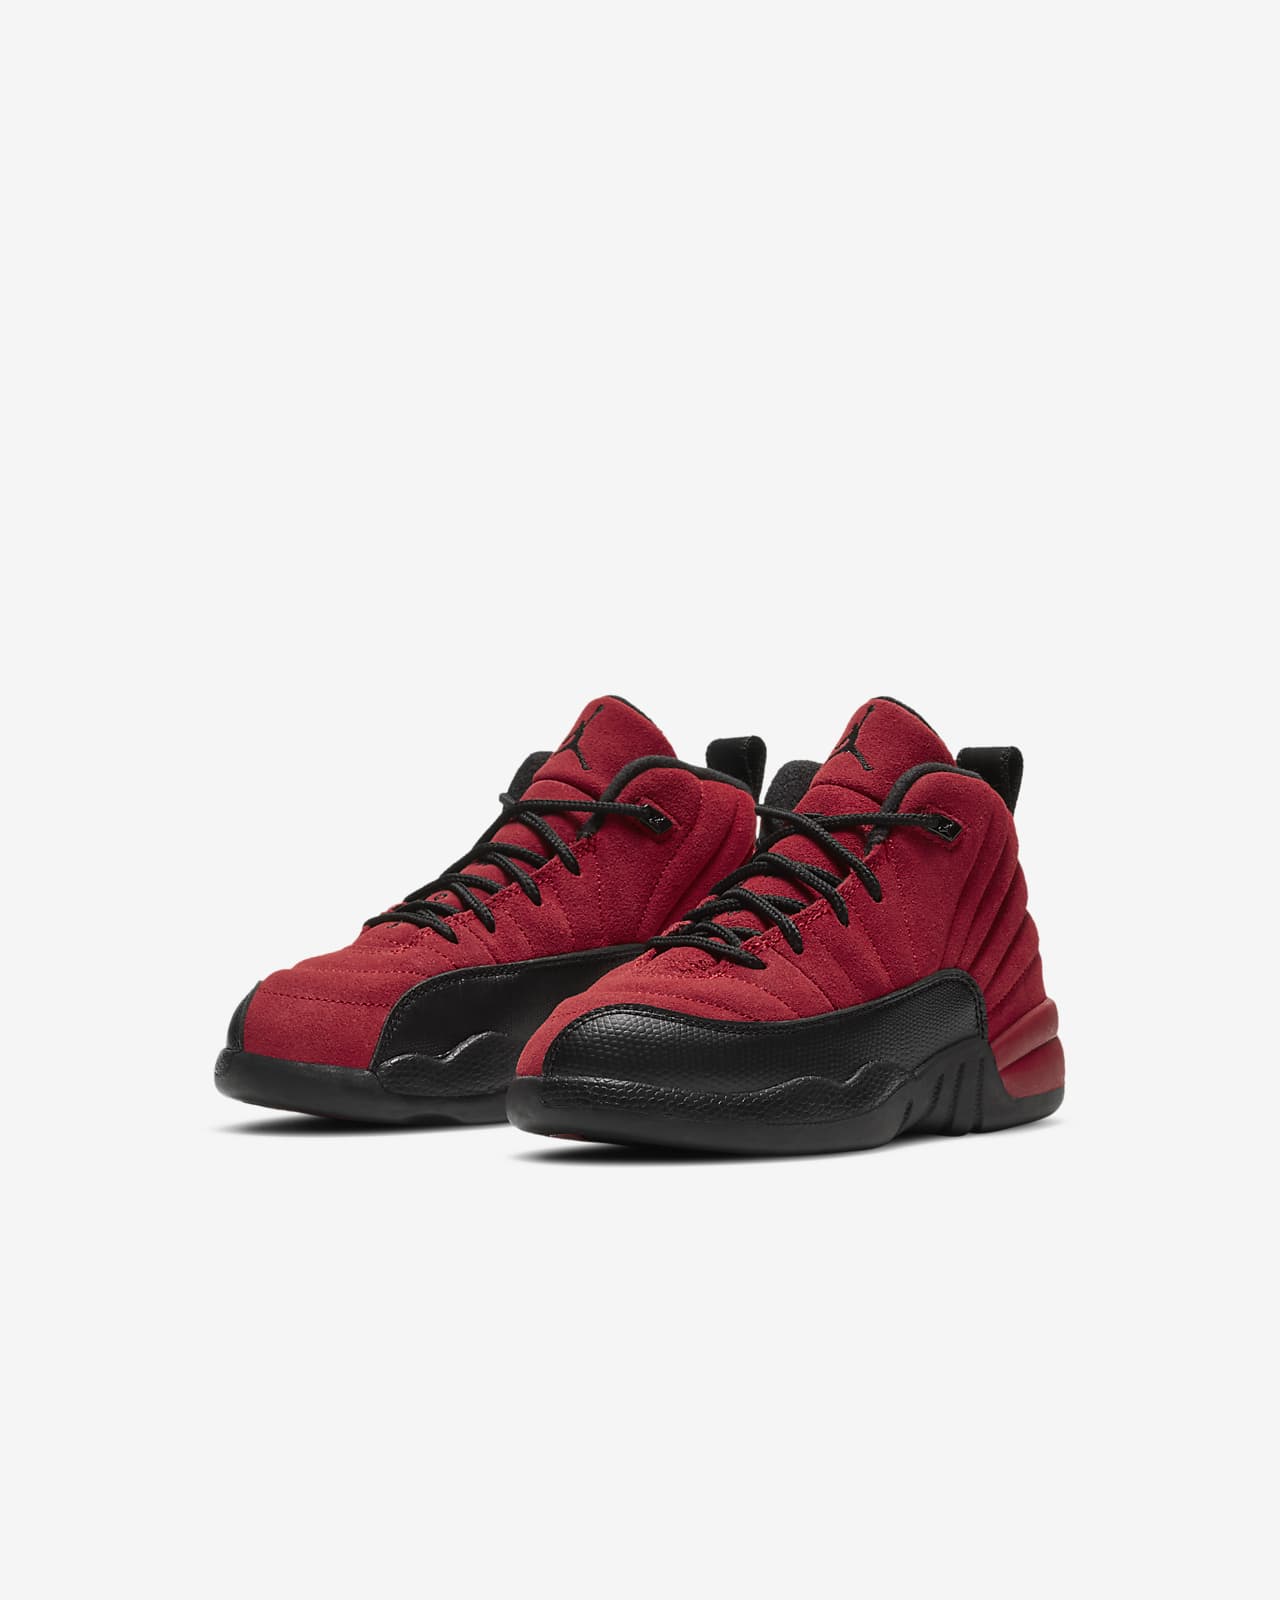 Jordan 12 Retro Little Kids' Shoe. Nike.com